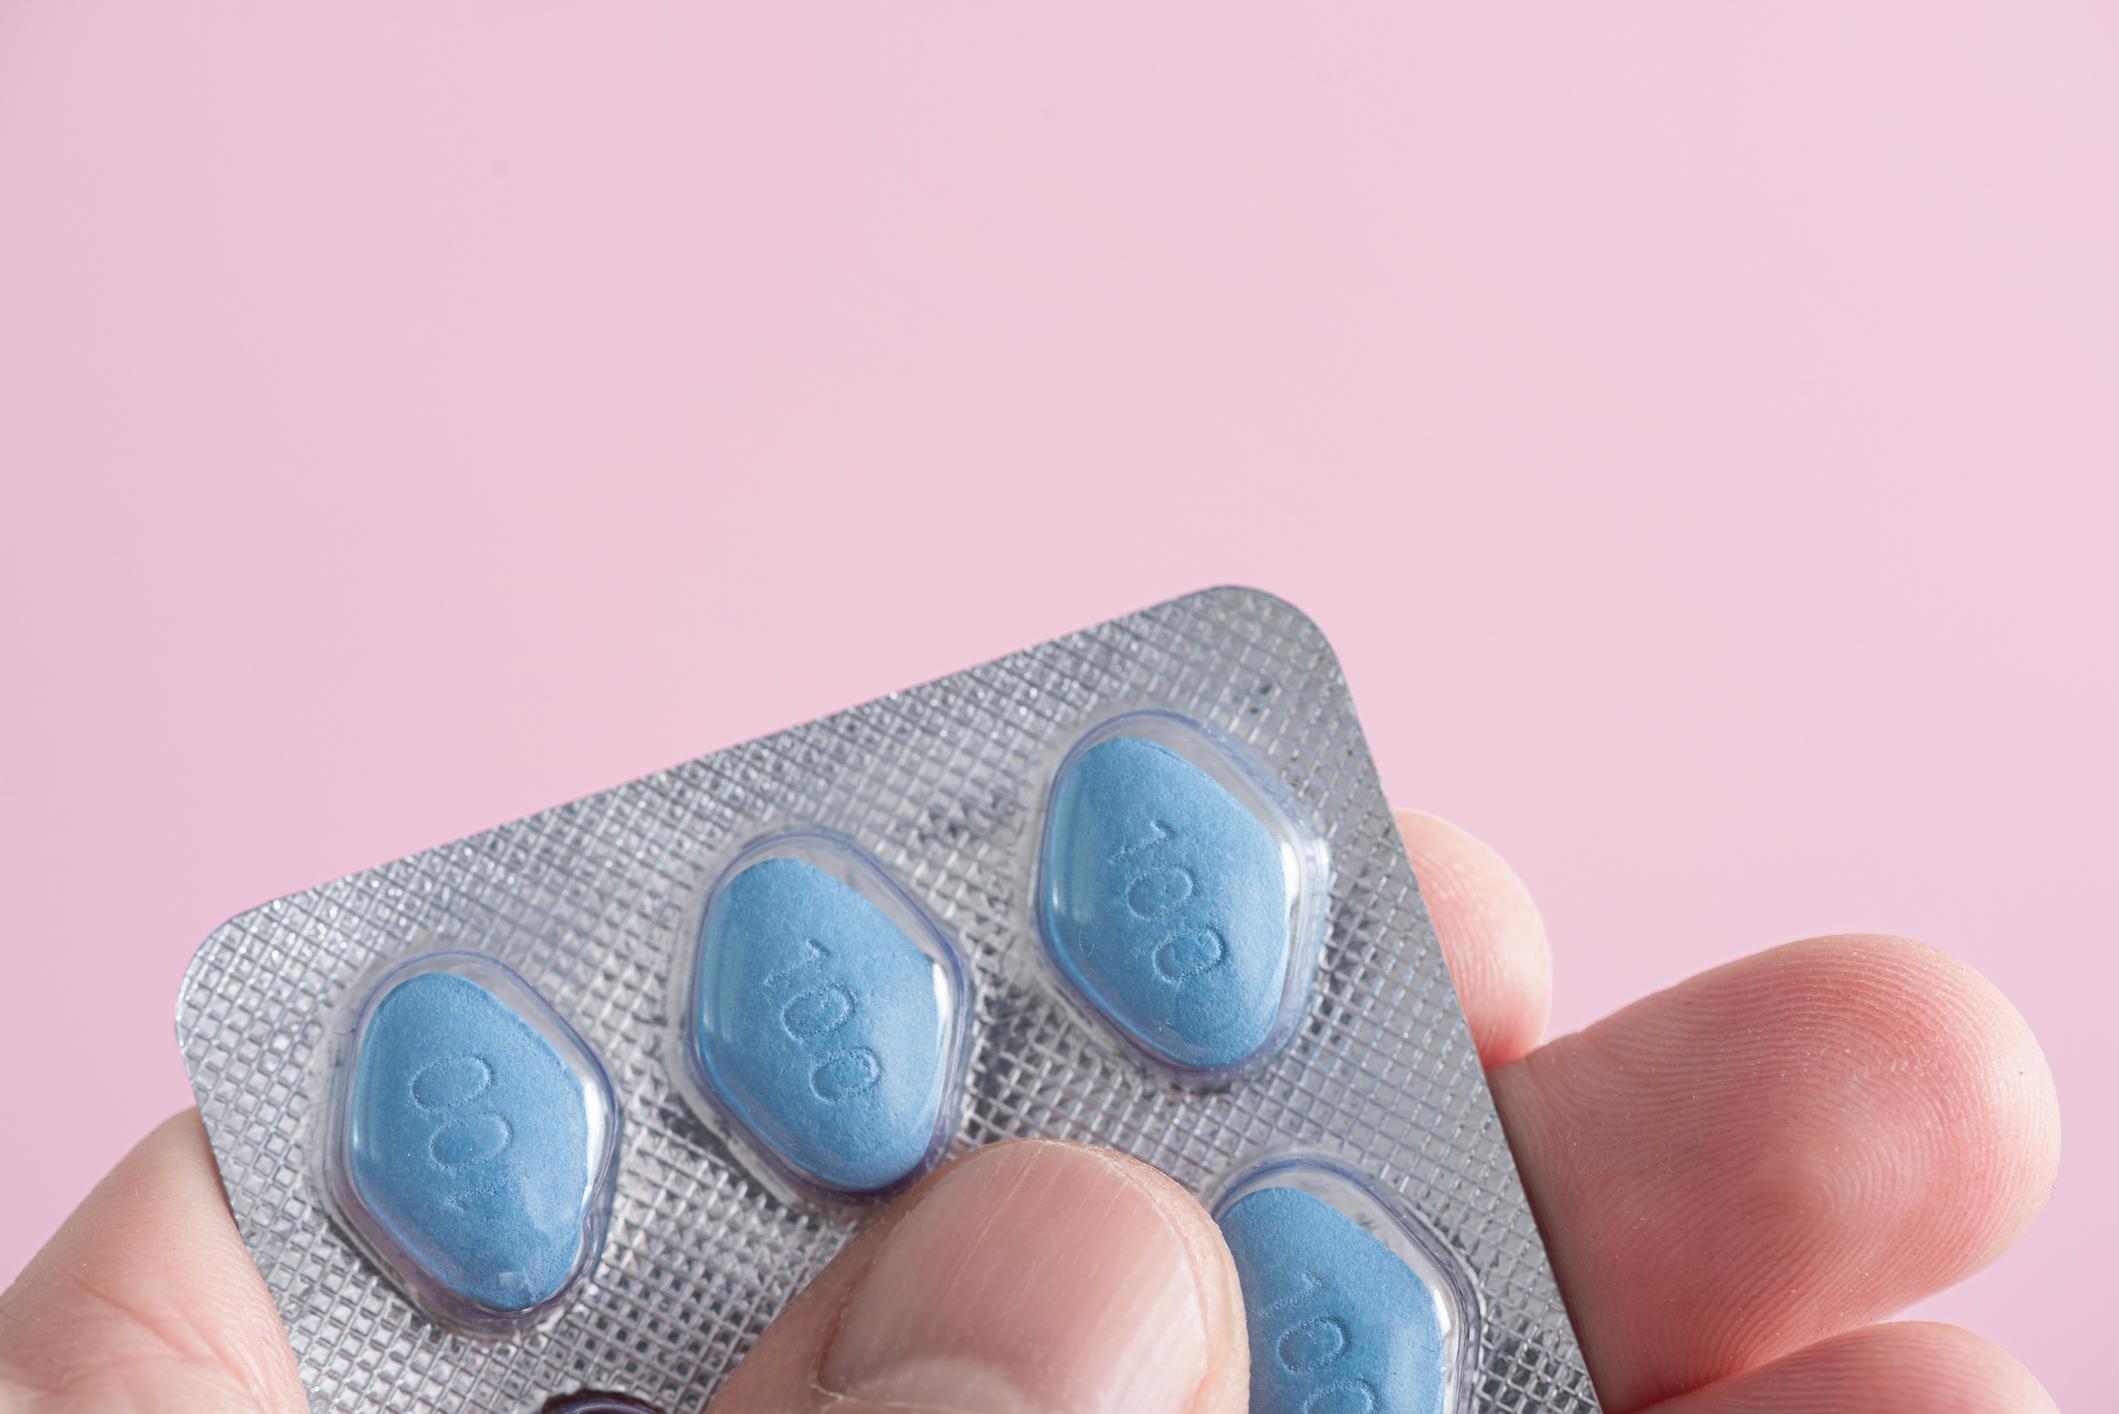 Viagra : 5 mythes qu'il faut arrêter de croire sur la petite pilule bleue